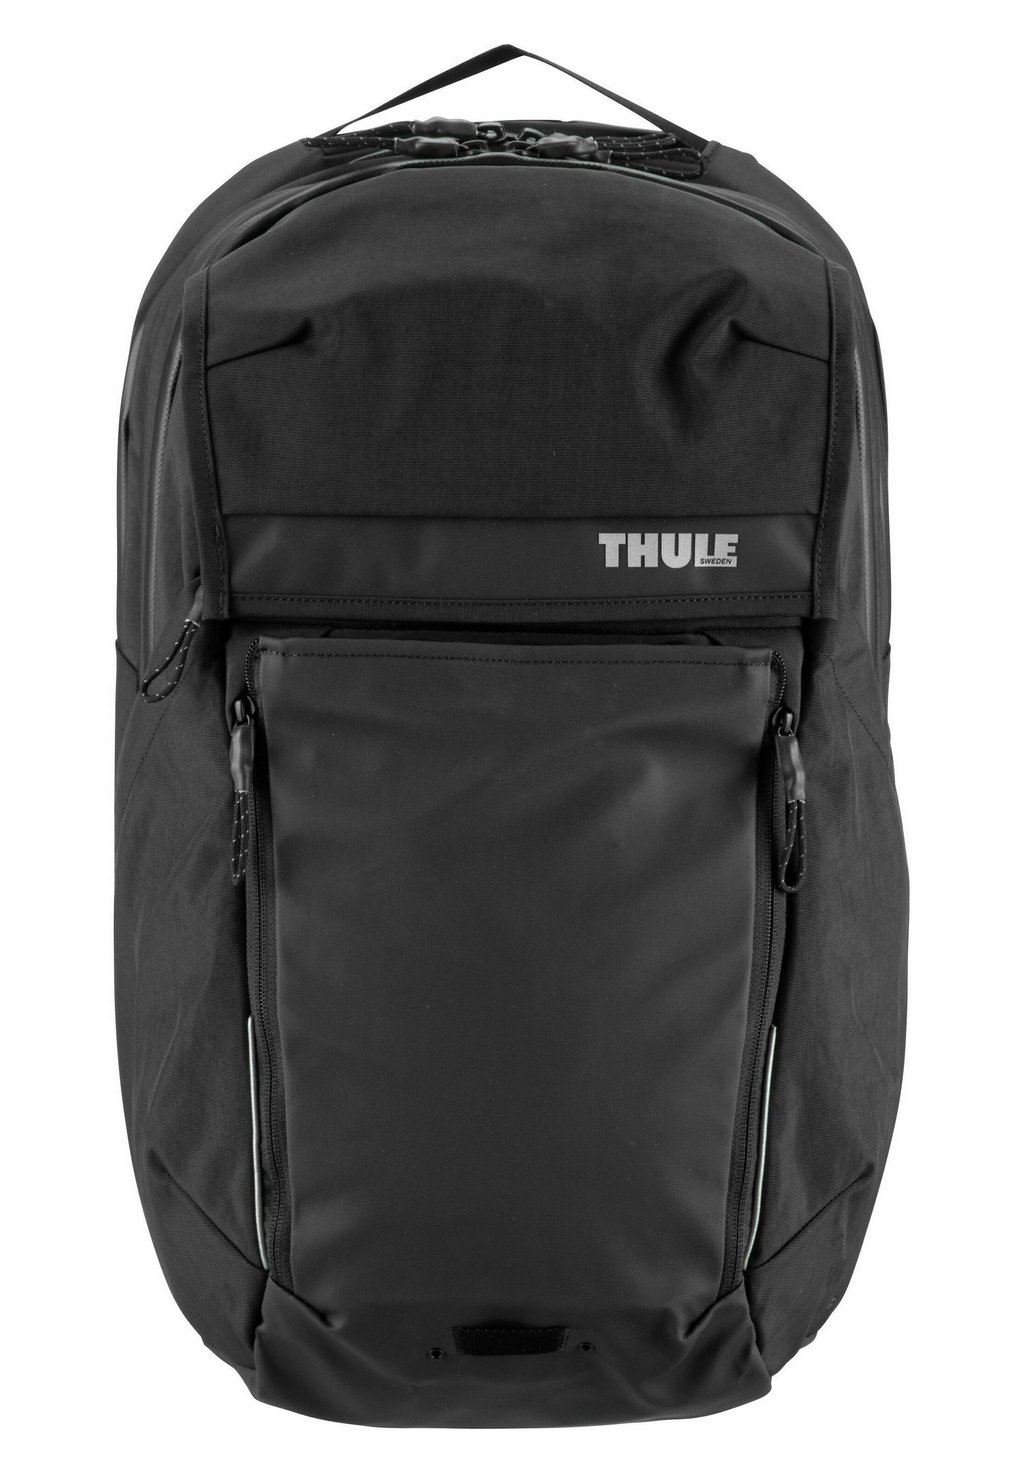 рюкзак thule backpack paramount commuter backpack 18l цвет olivine Рюкзак PARAMOUNT COMMUTER BACKPACK 18L Thule, цвет black